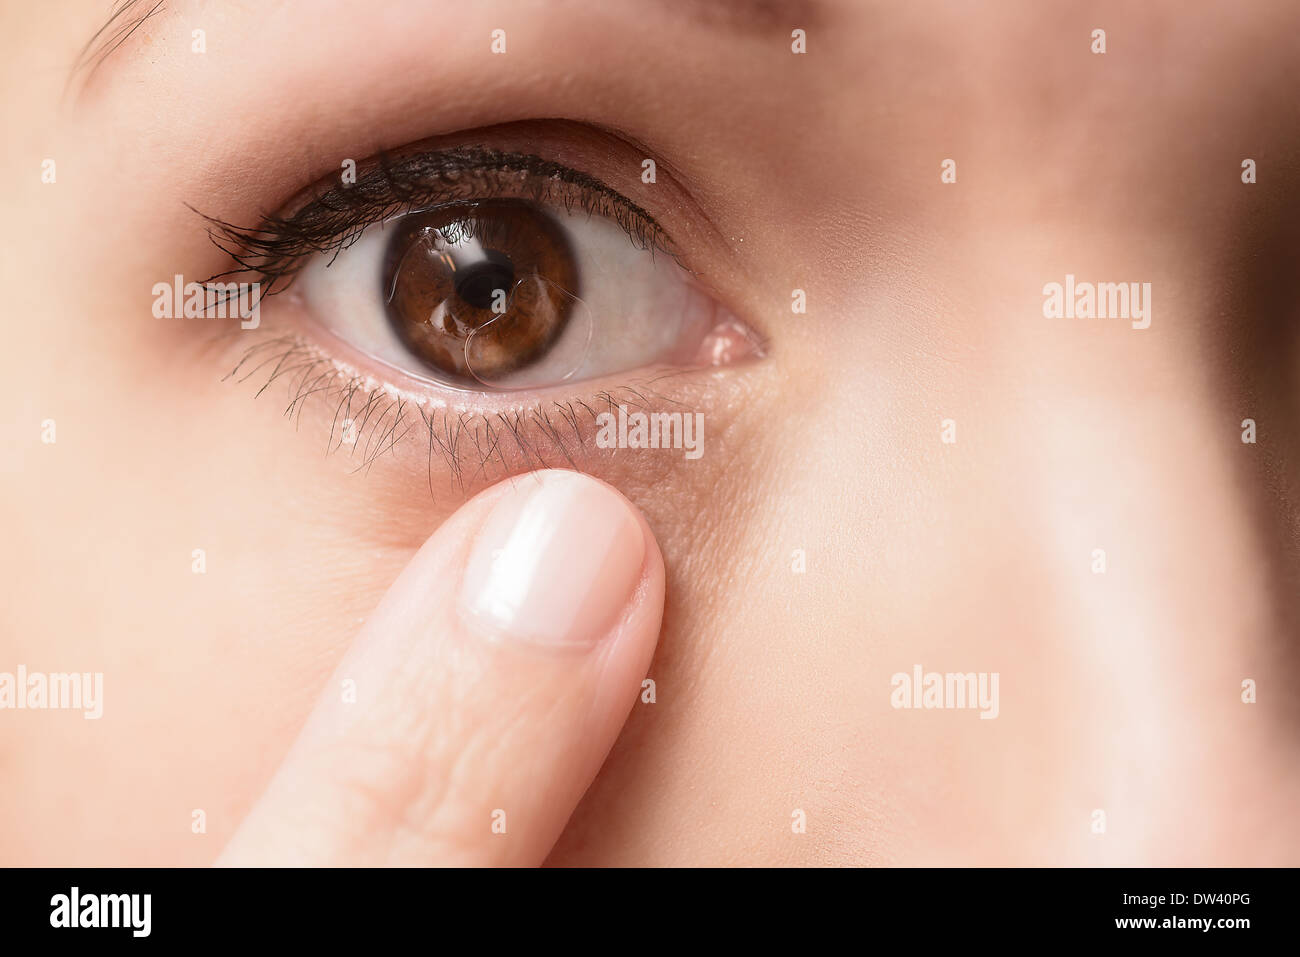 Lente a contatto in un occhio di un paziente di sesso femminile con la tipica bolla d'aria sotto la lente, extreme close up Foto Stock